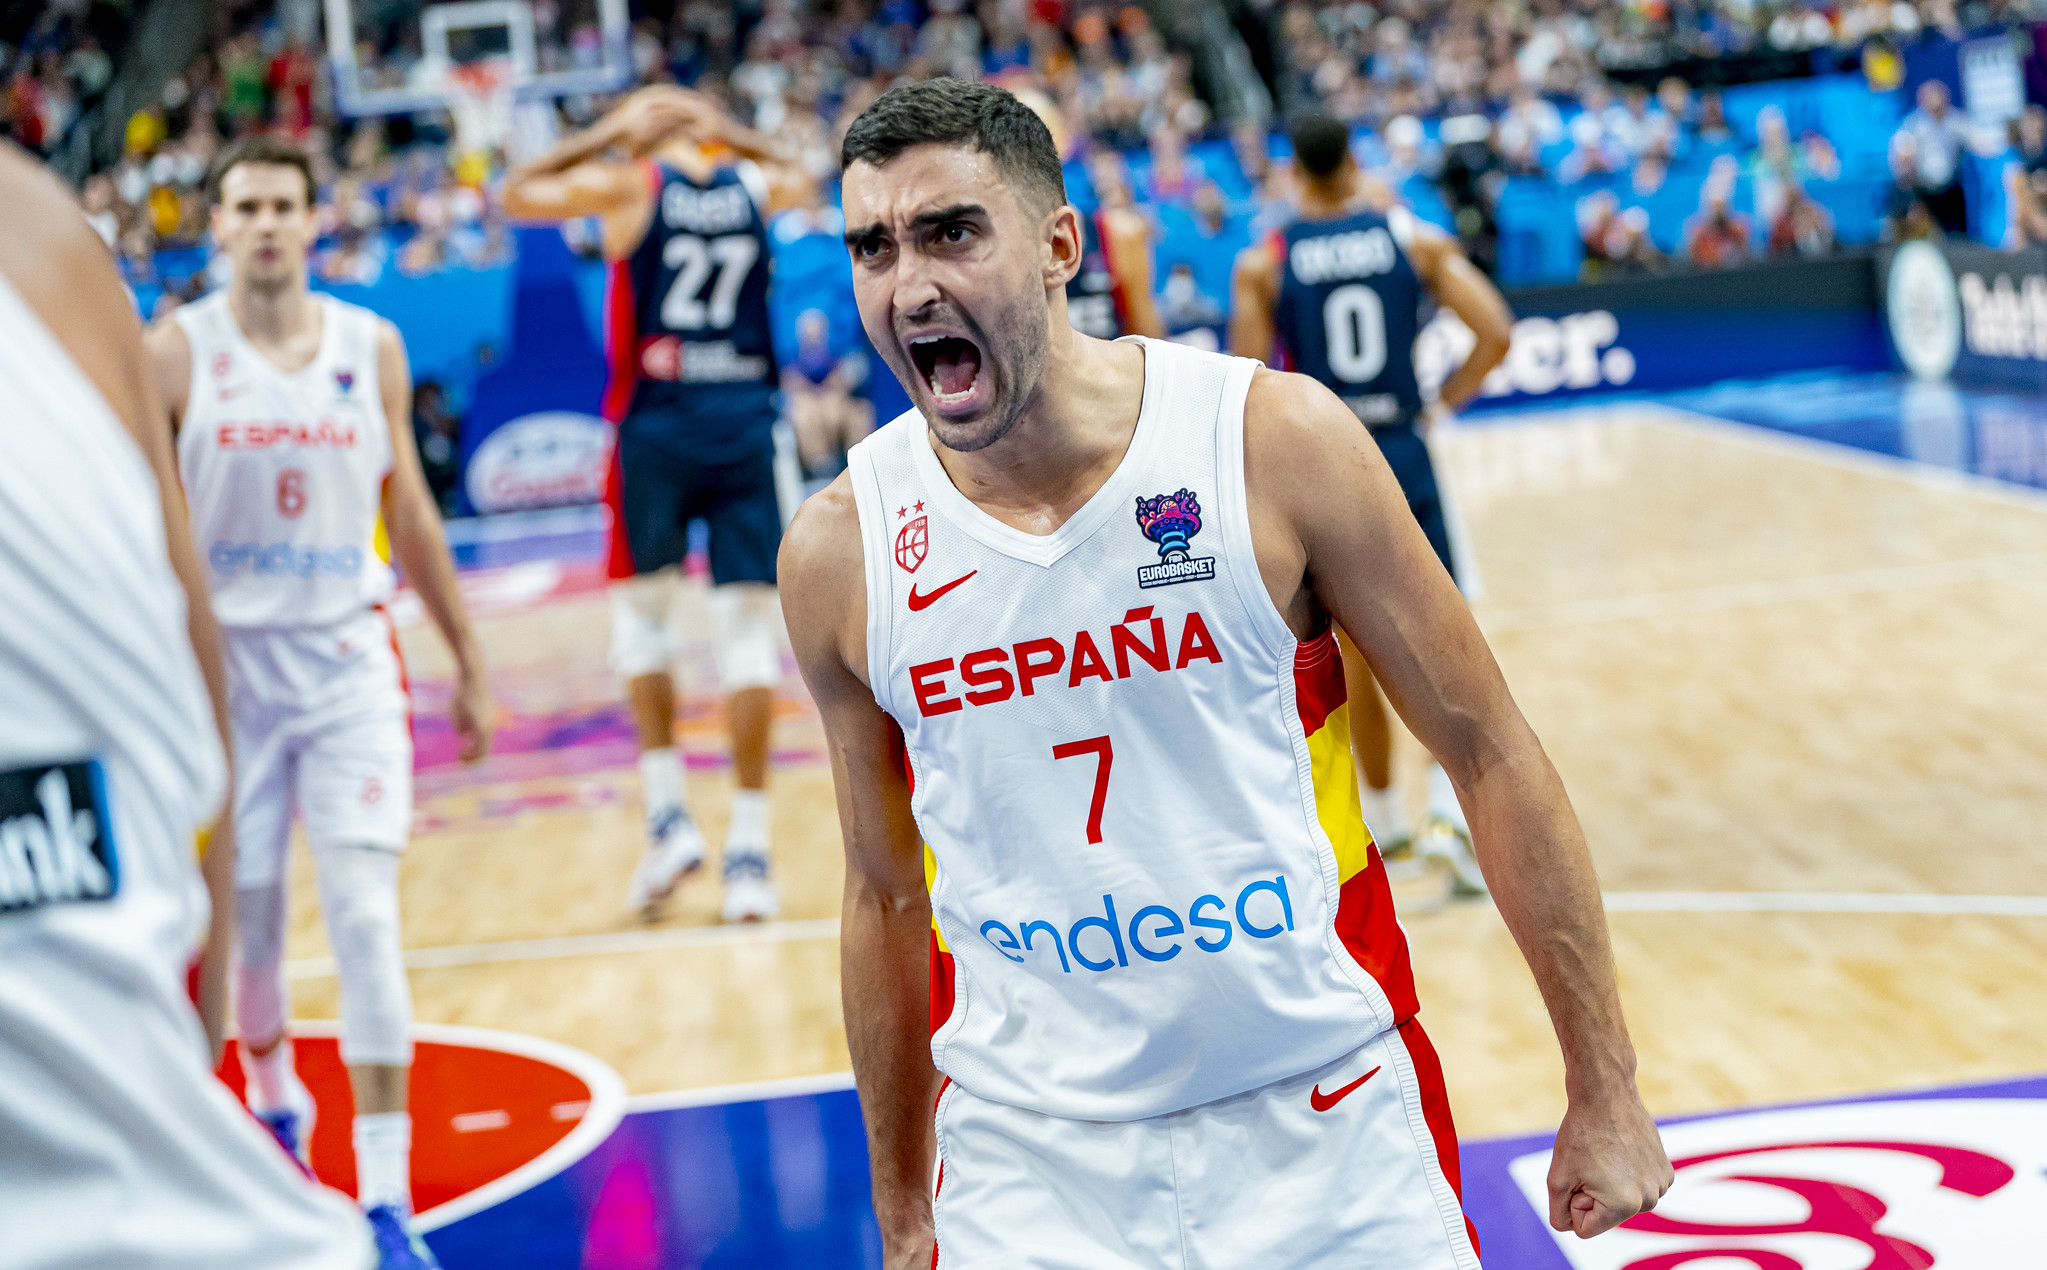 La España del aurinegro Jaime Fernández, campeones del EuroBasket